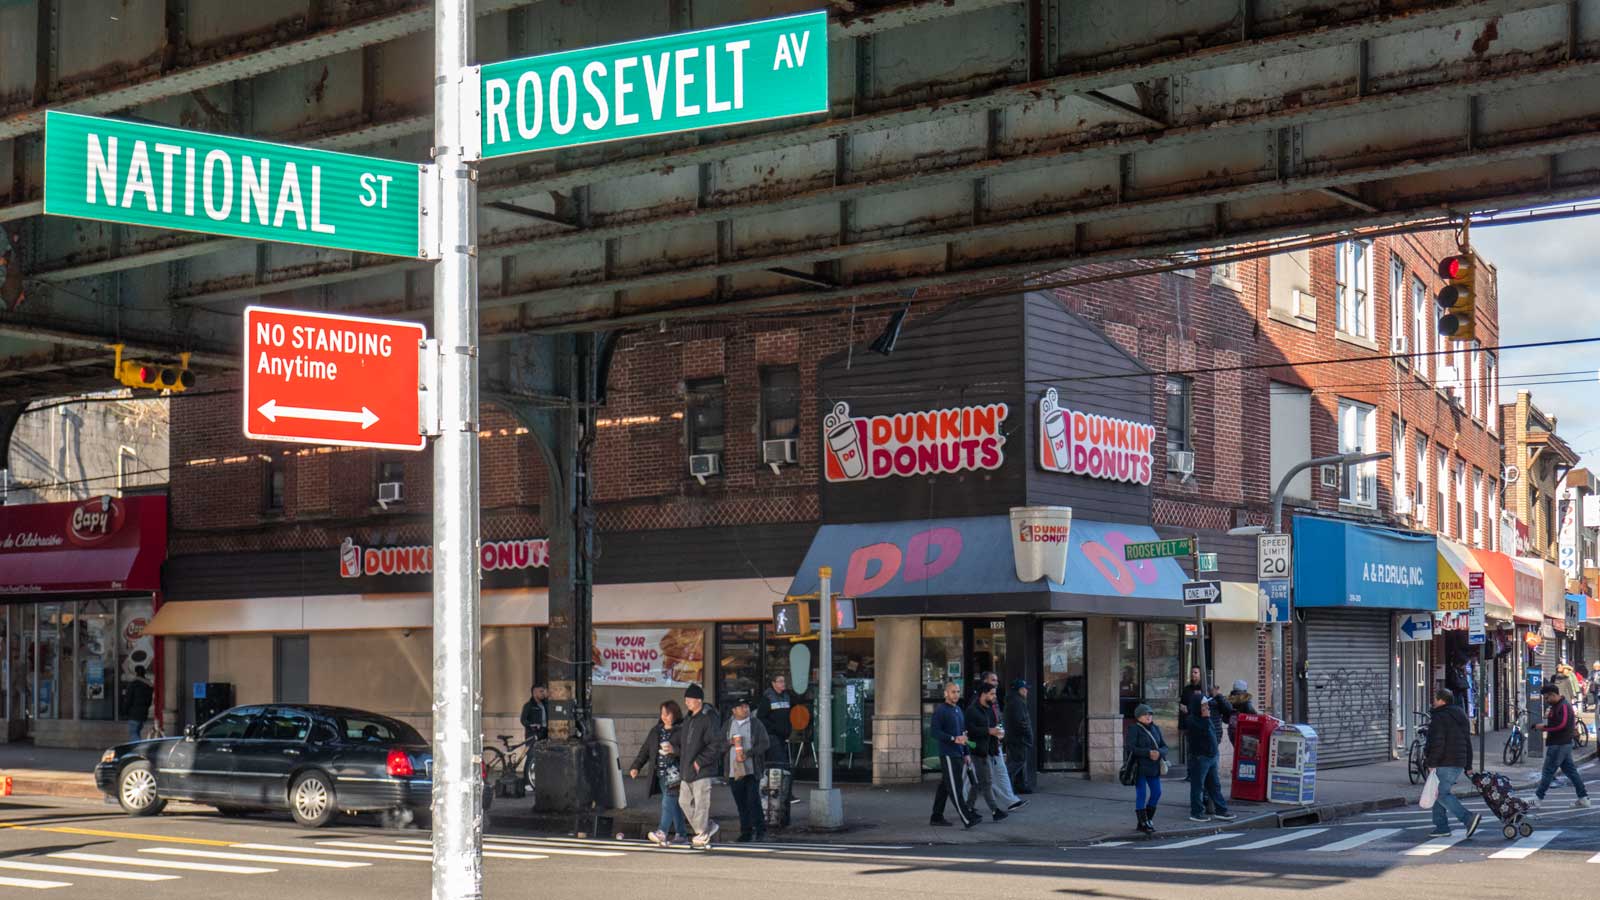 National & Roosevelt Avenue in Queens